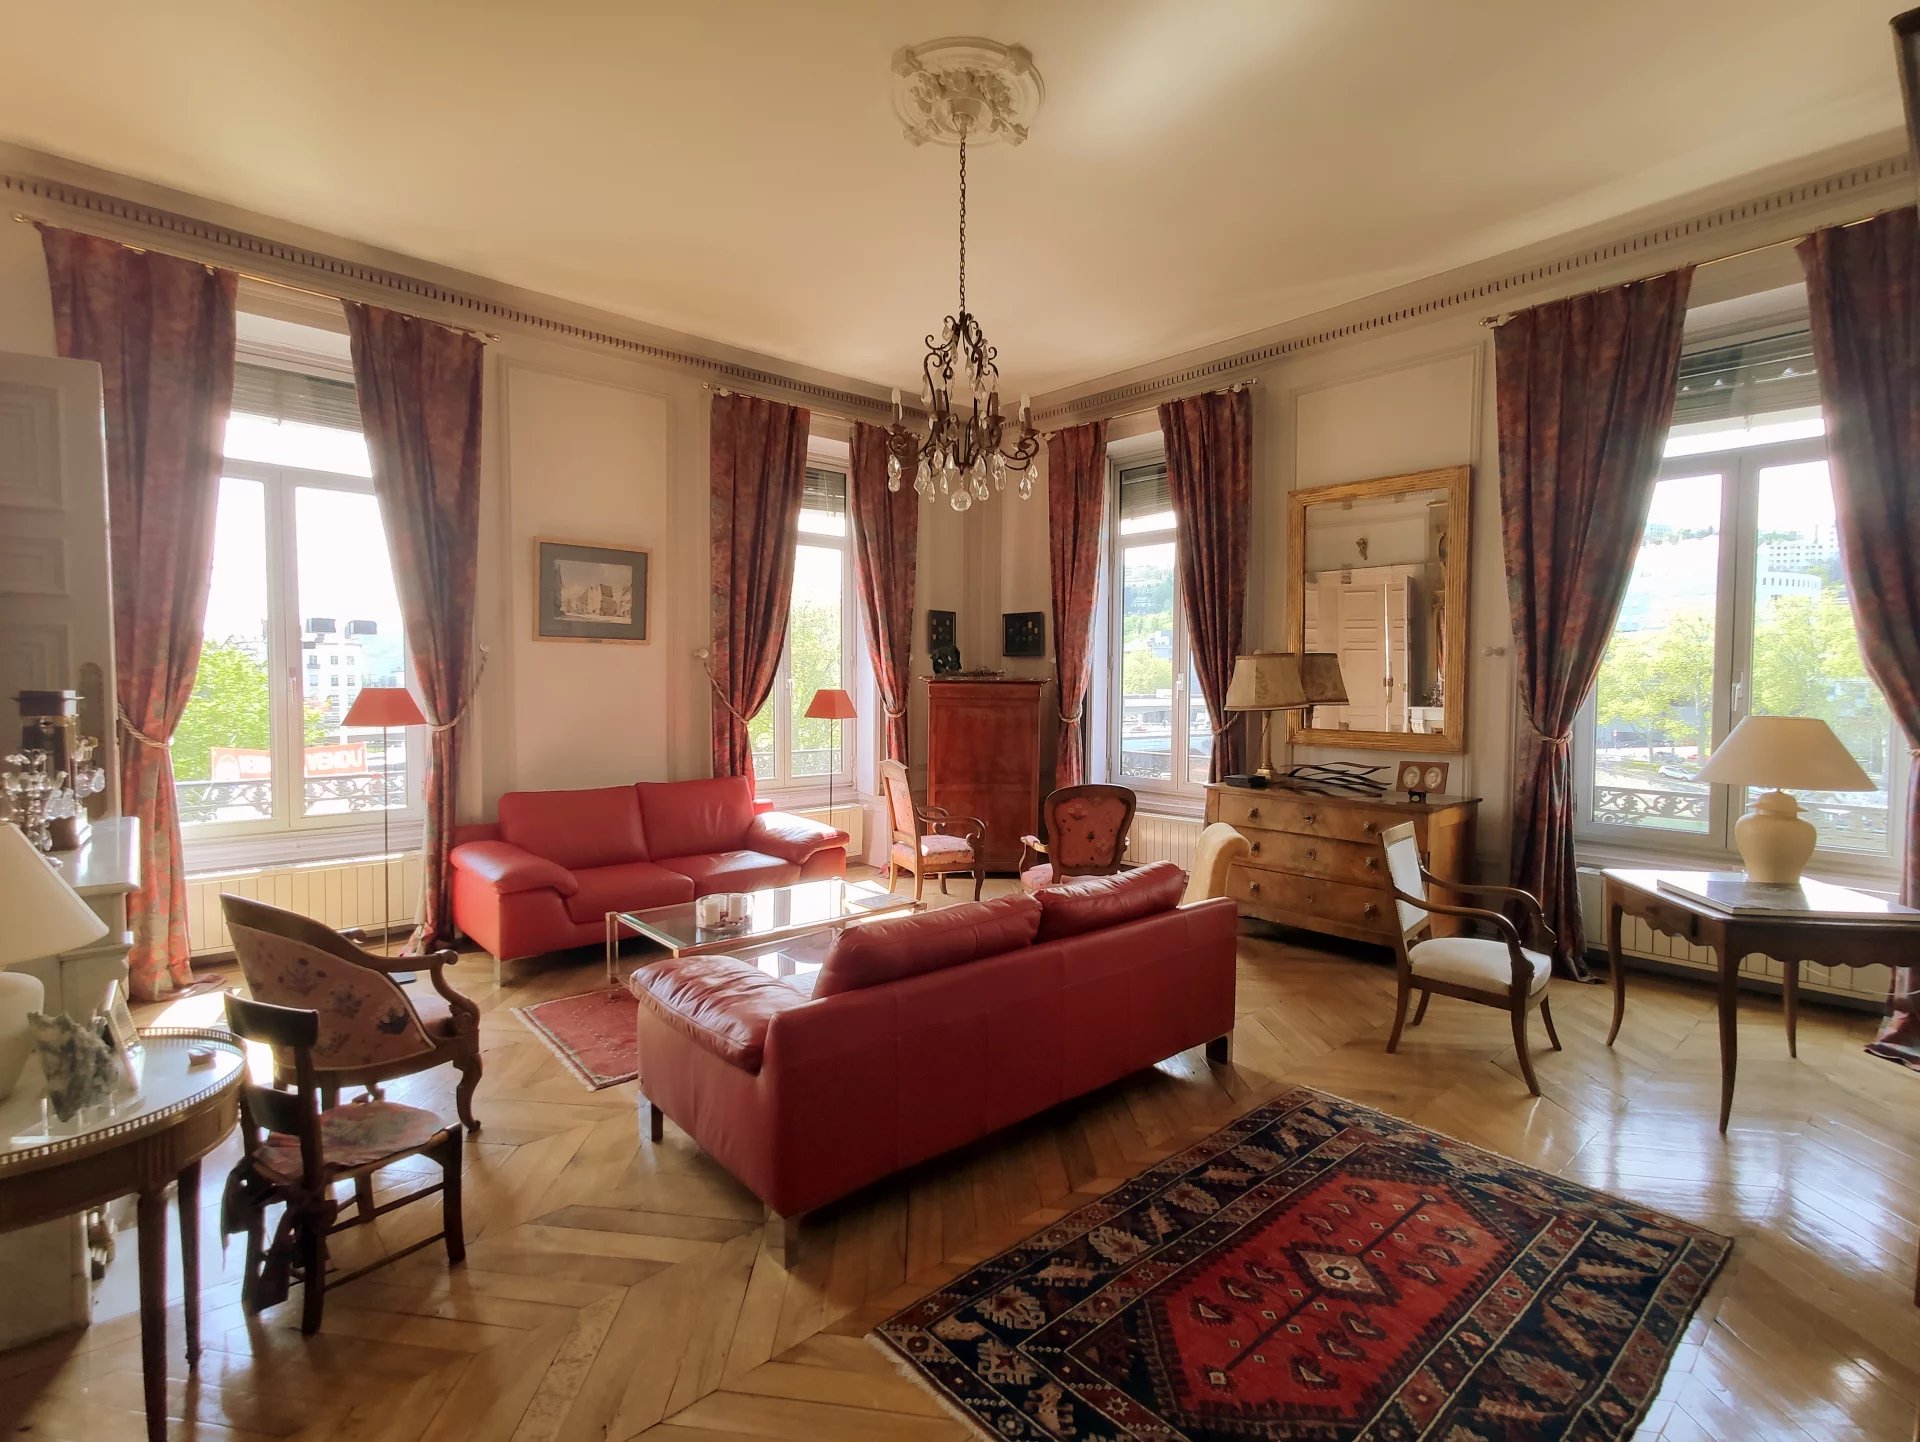 Sale Apartment - Lyon 2ème Ainay